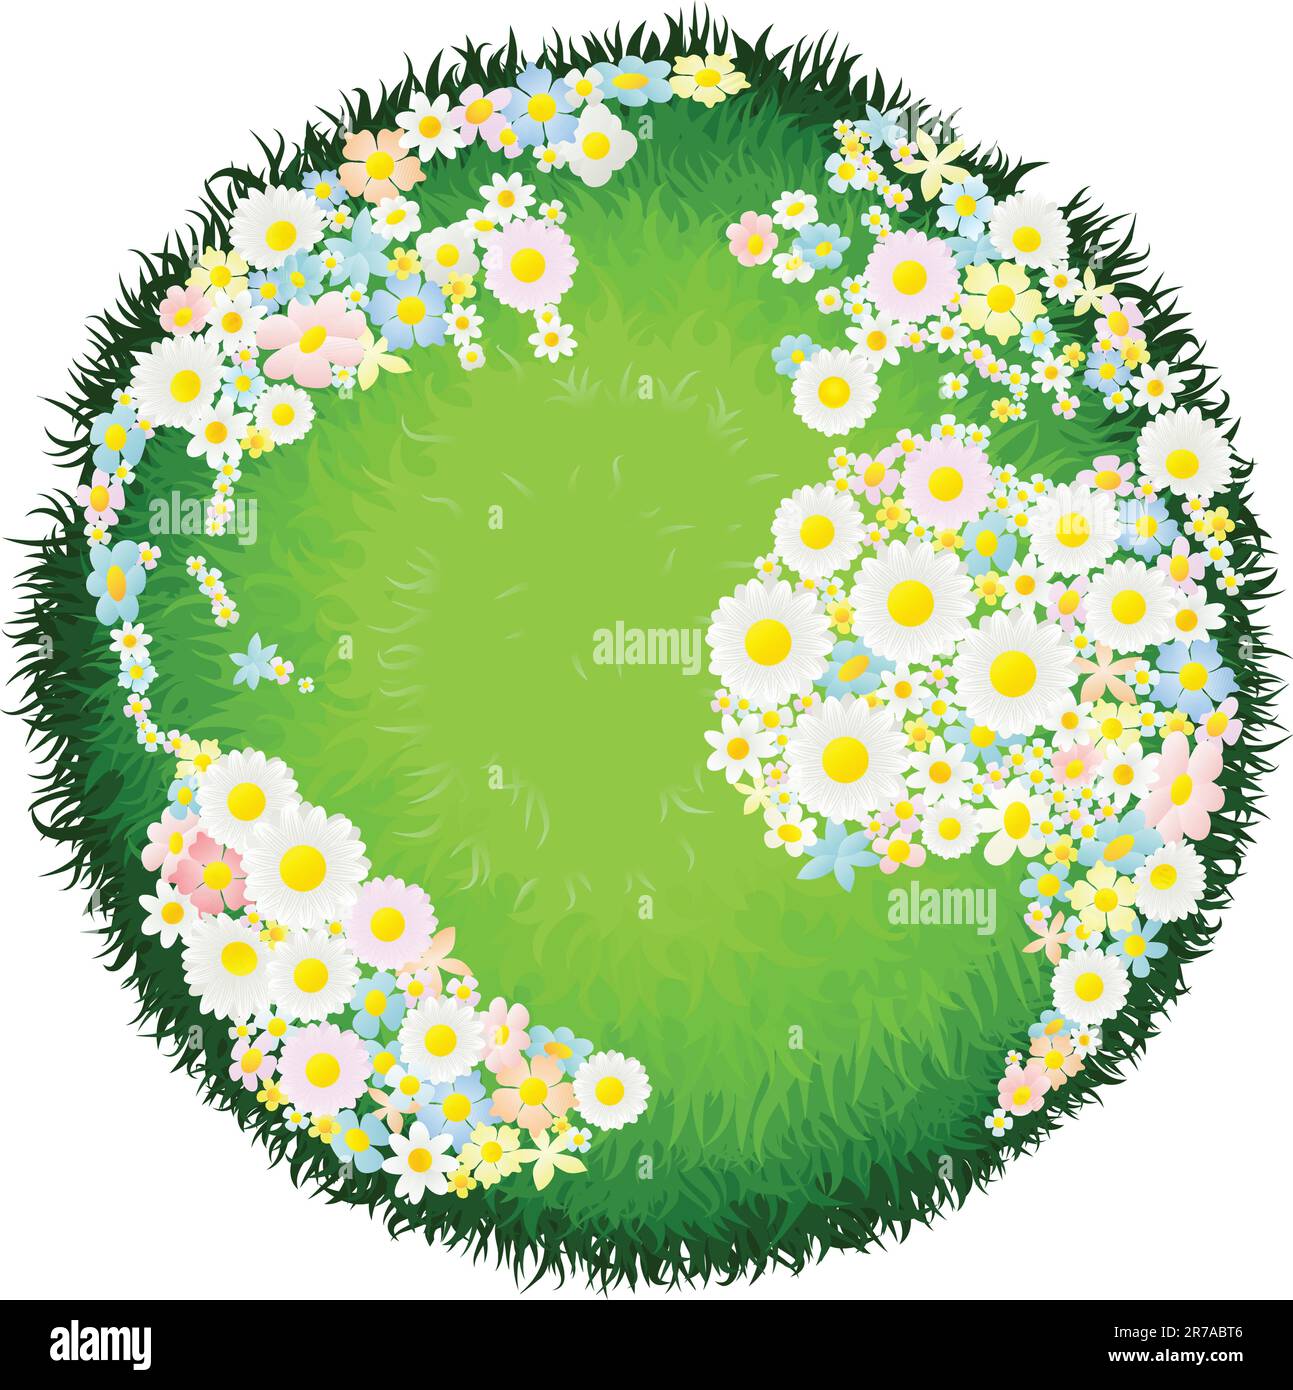 Un monde globe terrestre avec continents composé de fleurs et des mers que de l'herbe. Concept pour les questions environnementales ou de la paix. Illustration de Vecteur